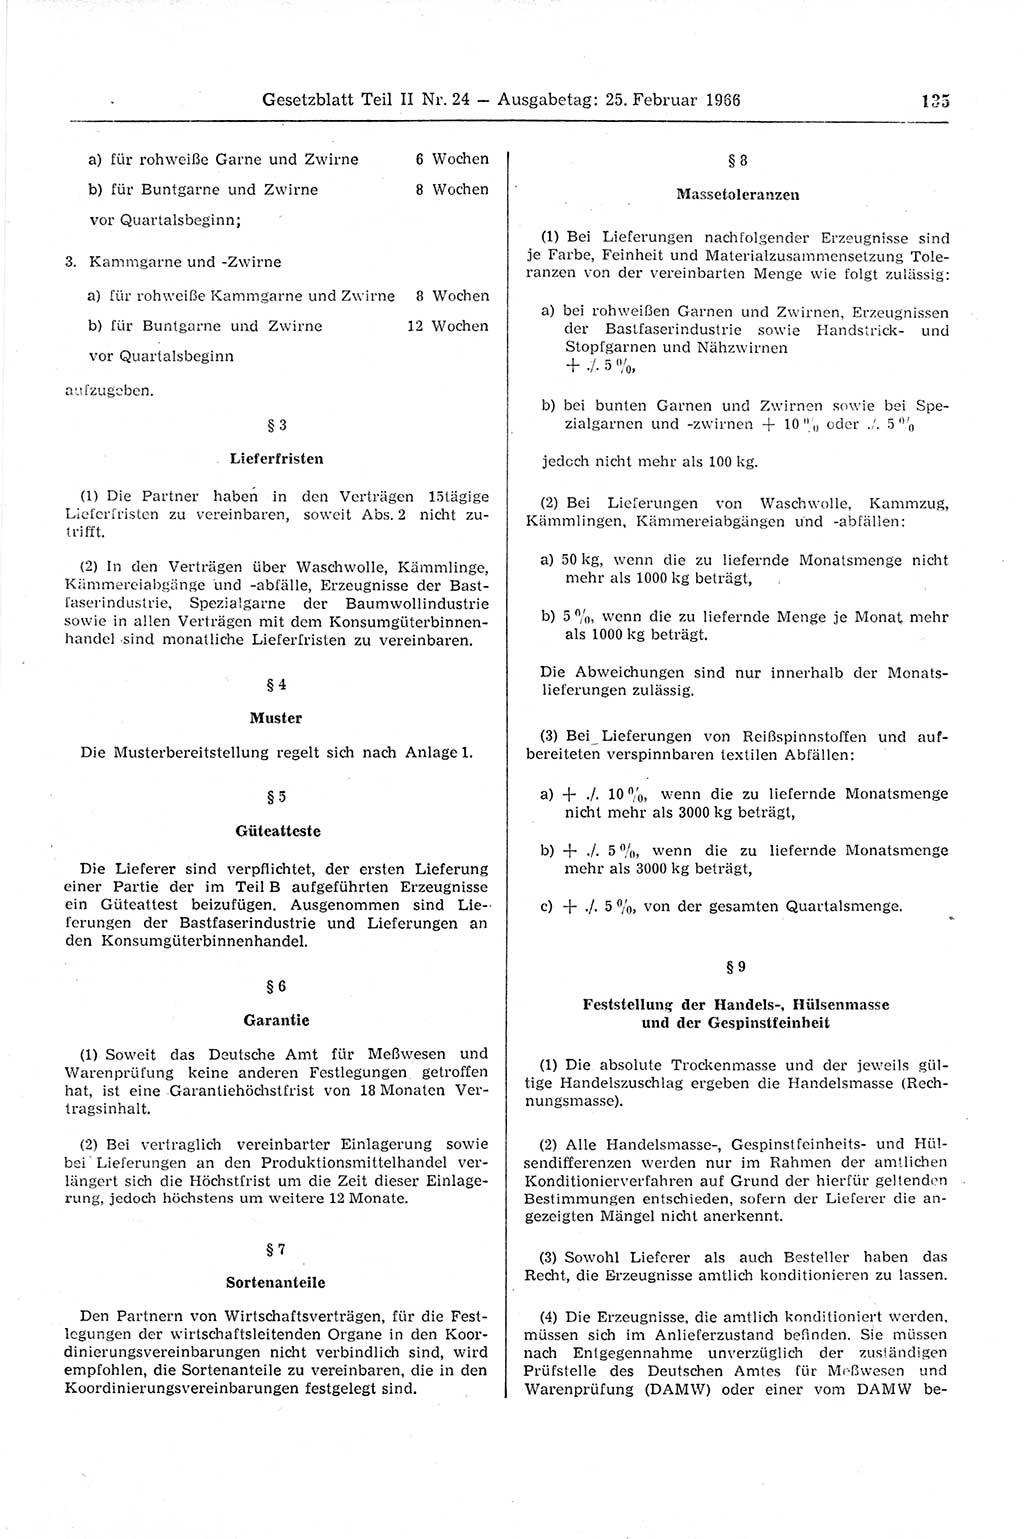 Gesetzblatt (GBl.) der Deutschen Demokratischen Republik (DDR) Teil ⅠⅠ 1966, Seite 135 (GBl. DDR ⅠⅠ 1966, S. 135)